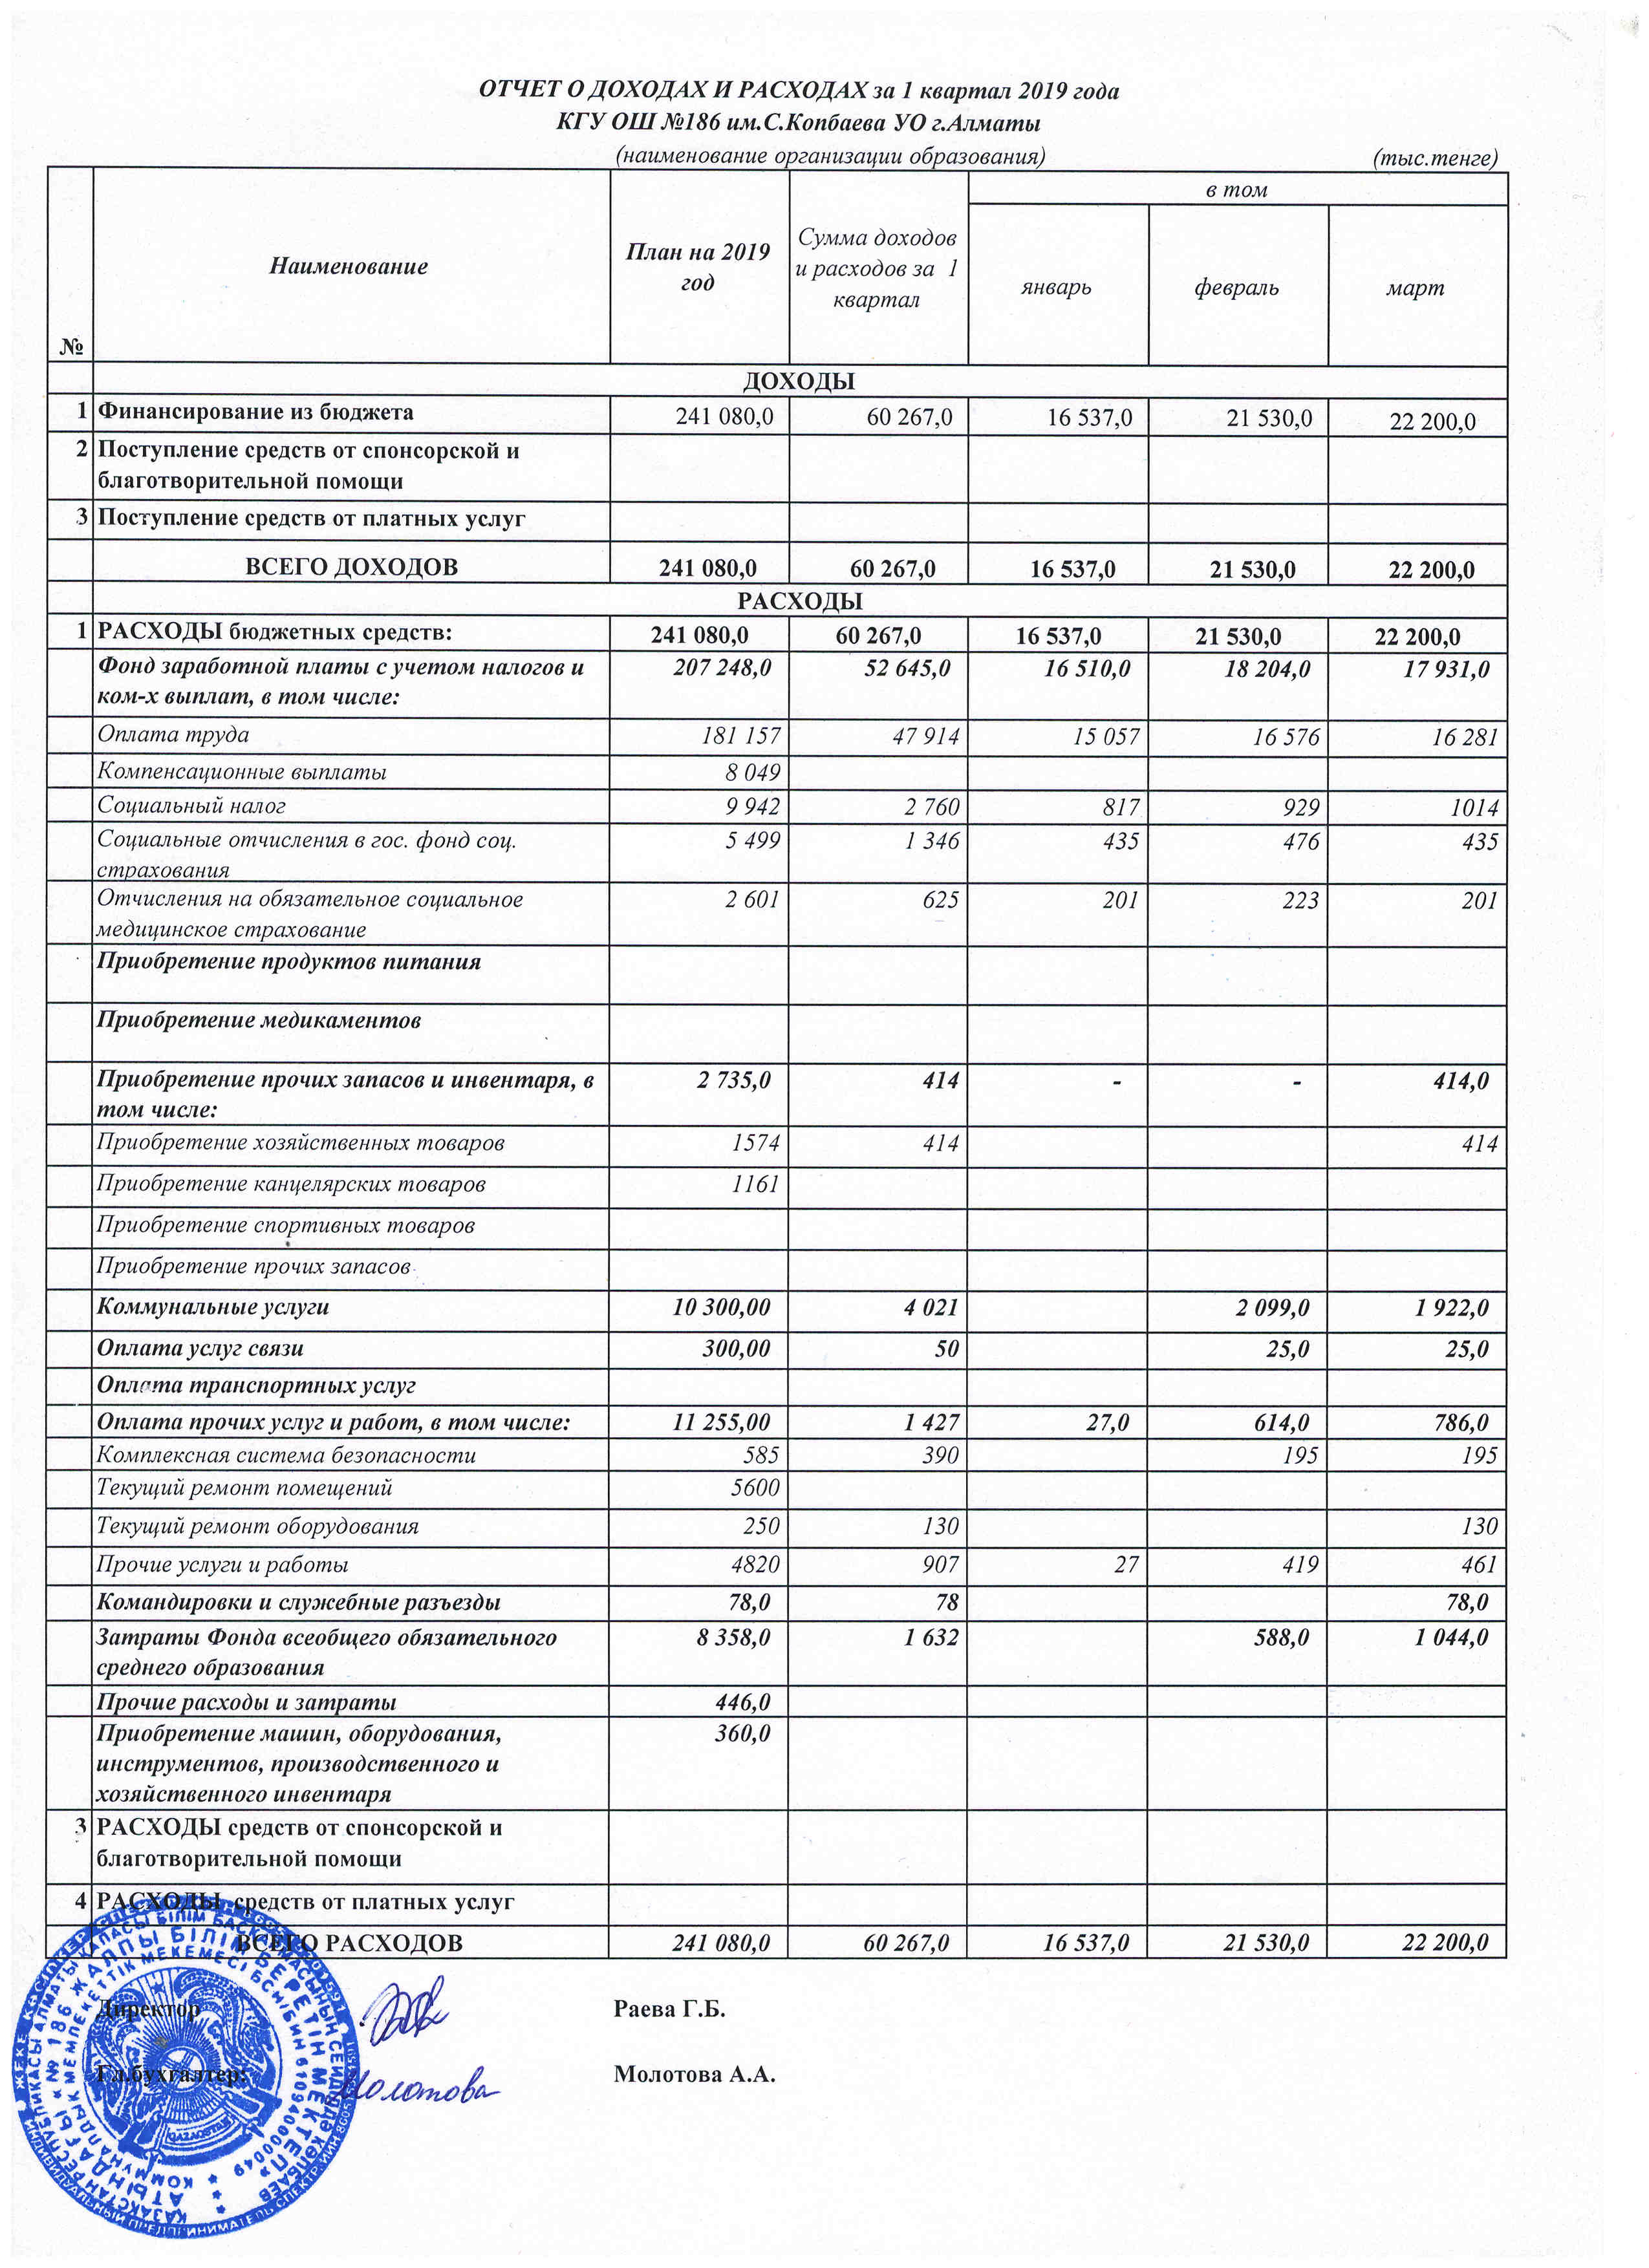 Отчёт о доходах и расходах за 1кв 2019